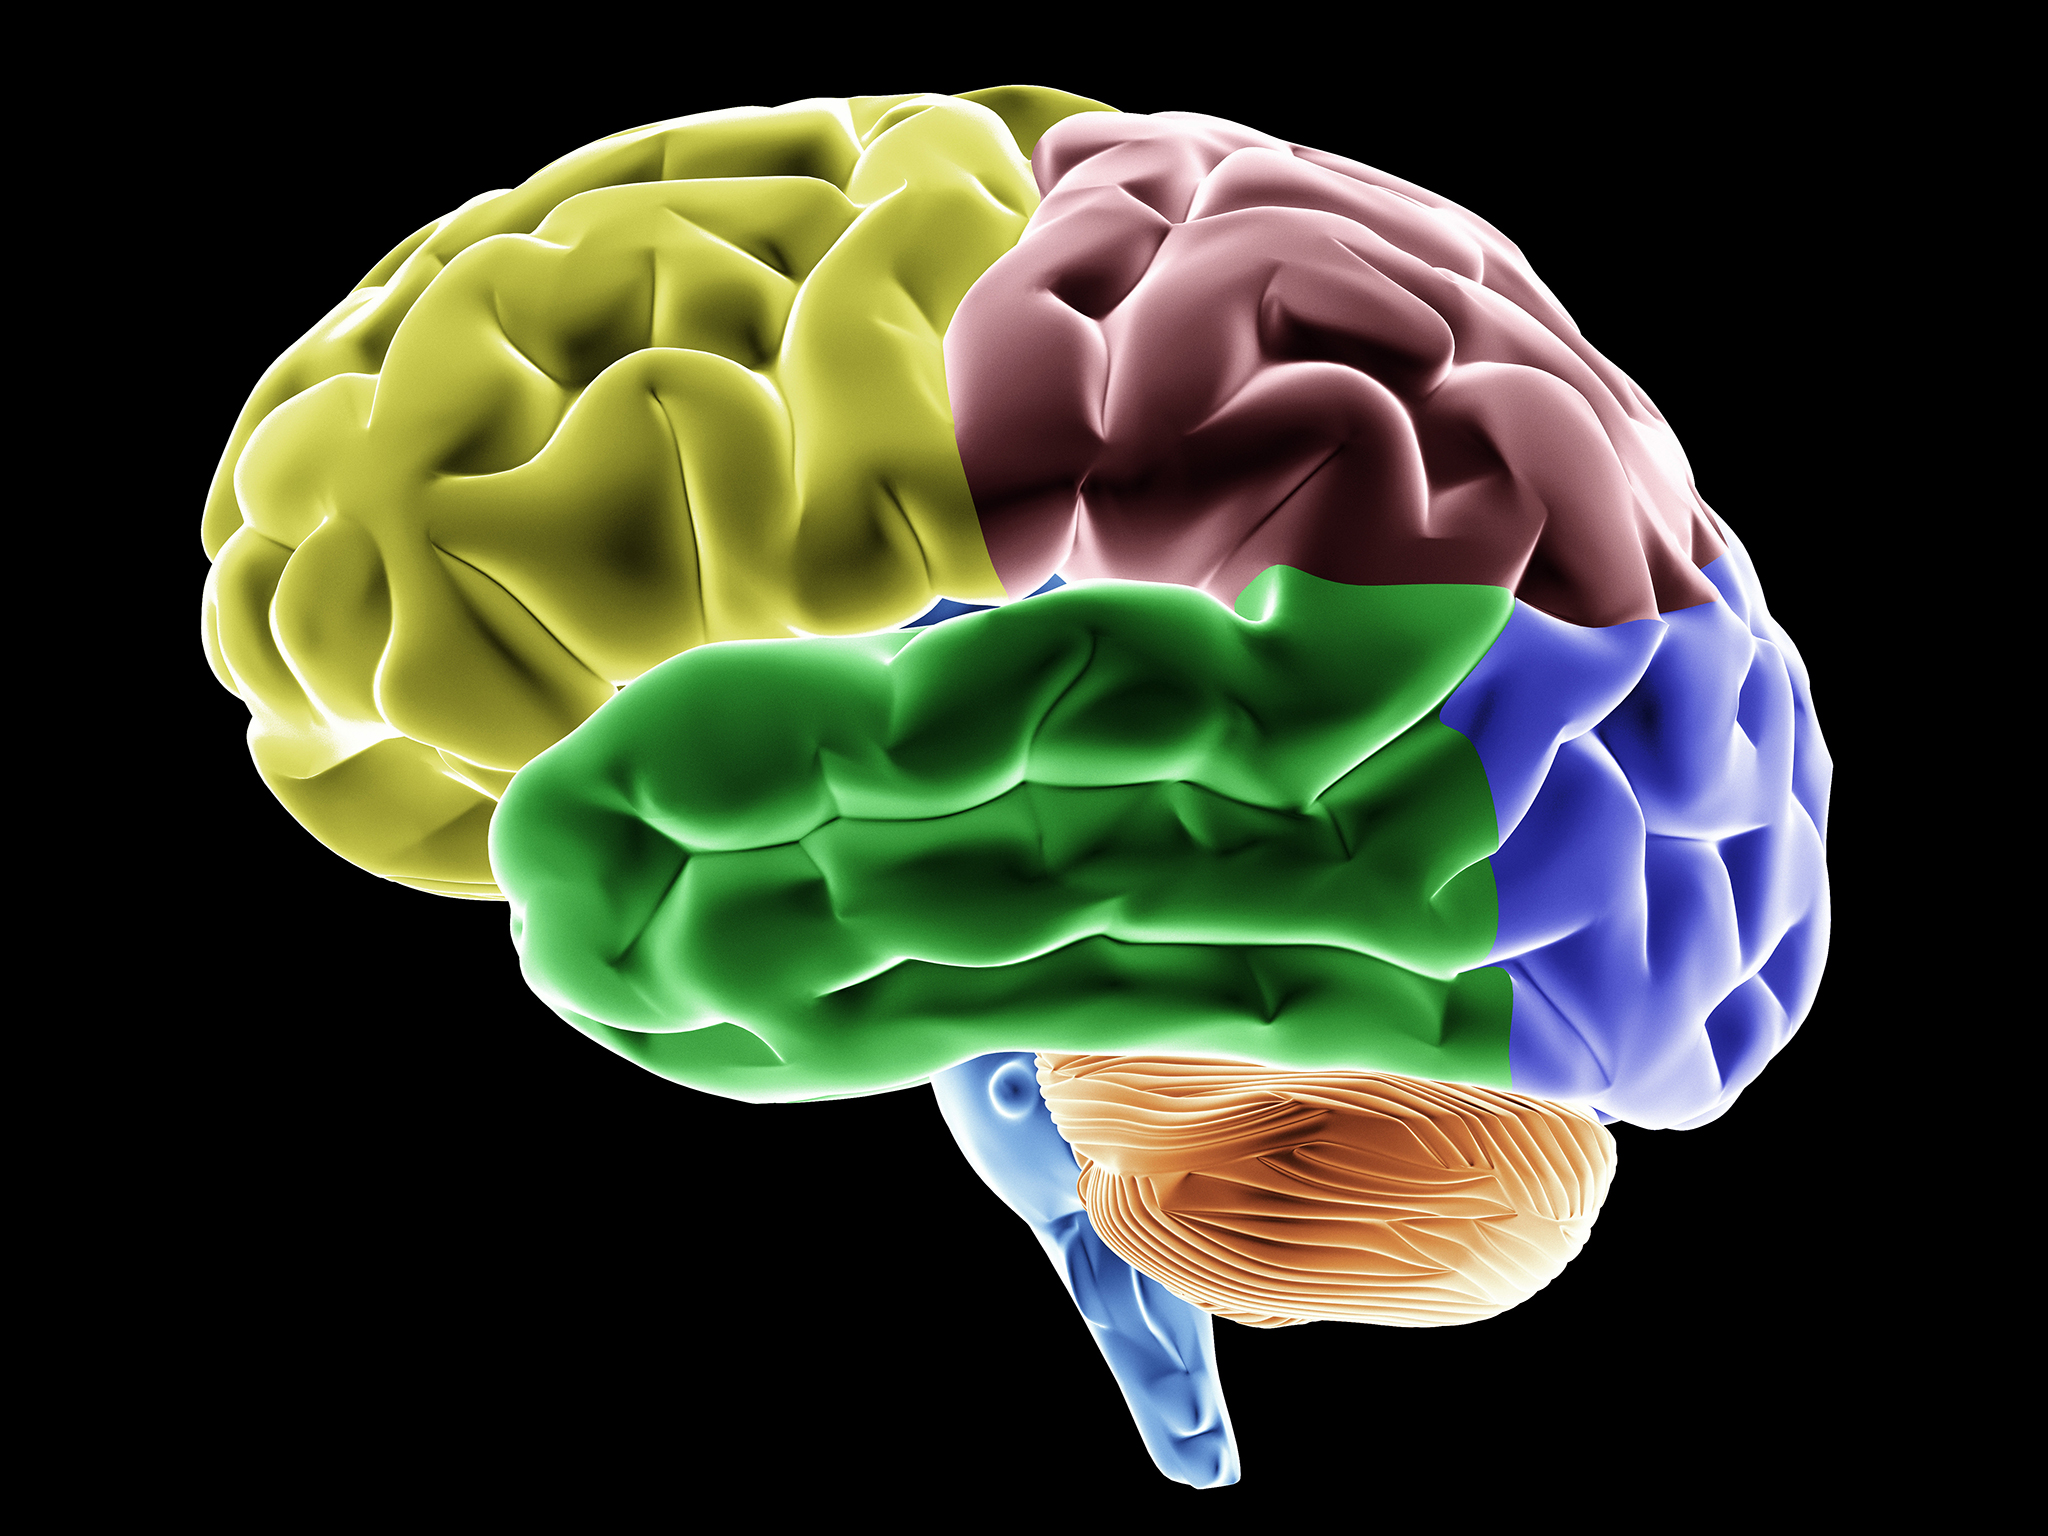 Ομάδες γονιδίων στον εγκέφαλο που επηρεάζουν την νοημοσύνη